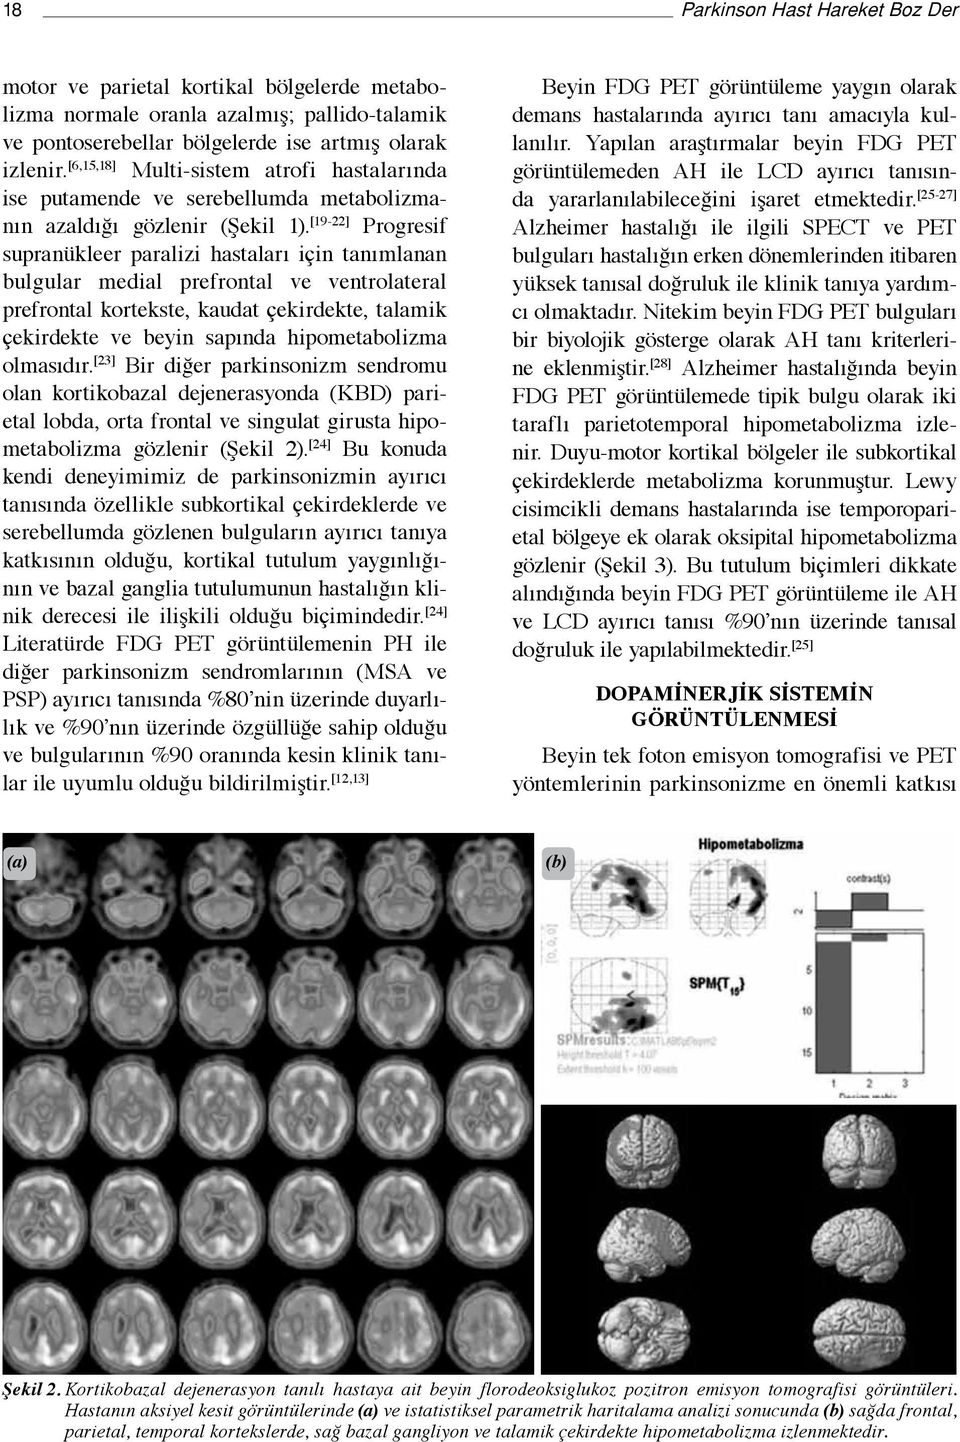 [19-22] Progresif supranükleer paralizi hastaları için tanımlanan bulgular medial prefrontal ve ventrolateral prefrontal kortekste, kaudat çekirdekte, talamik çekirdekte ve beyin sapında